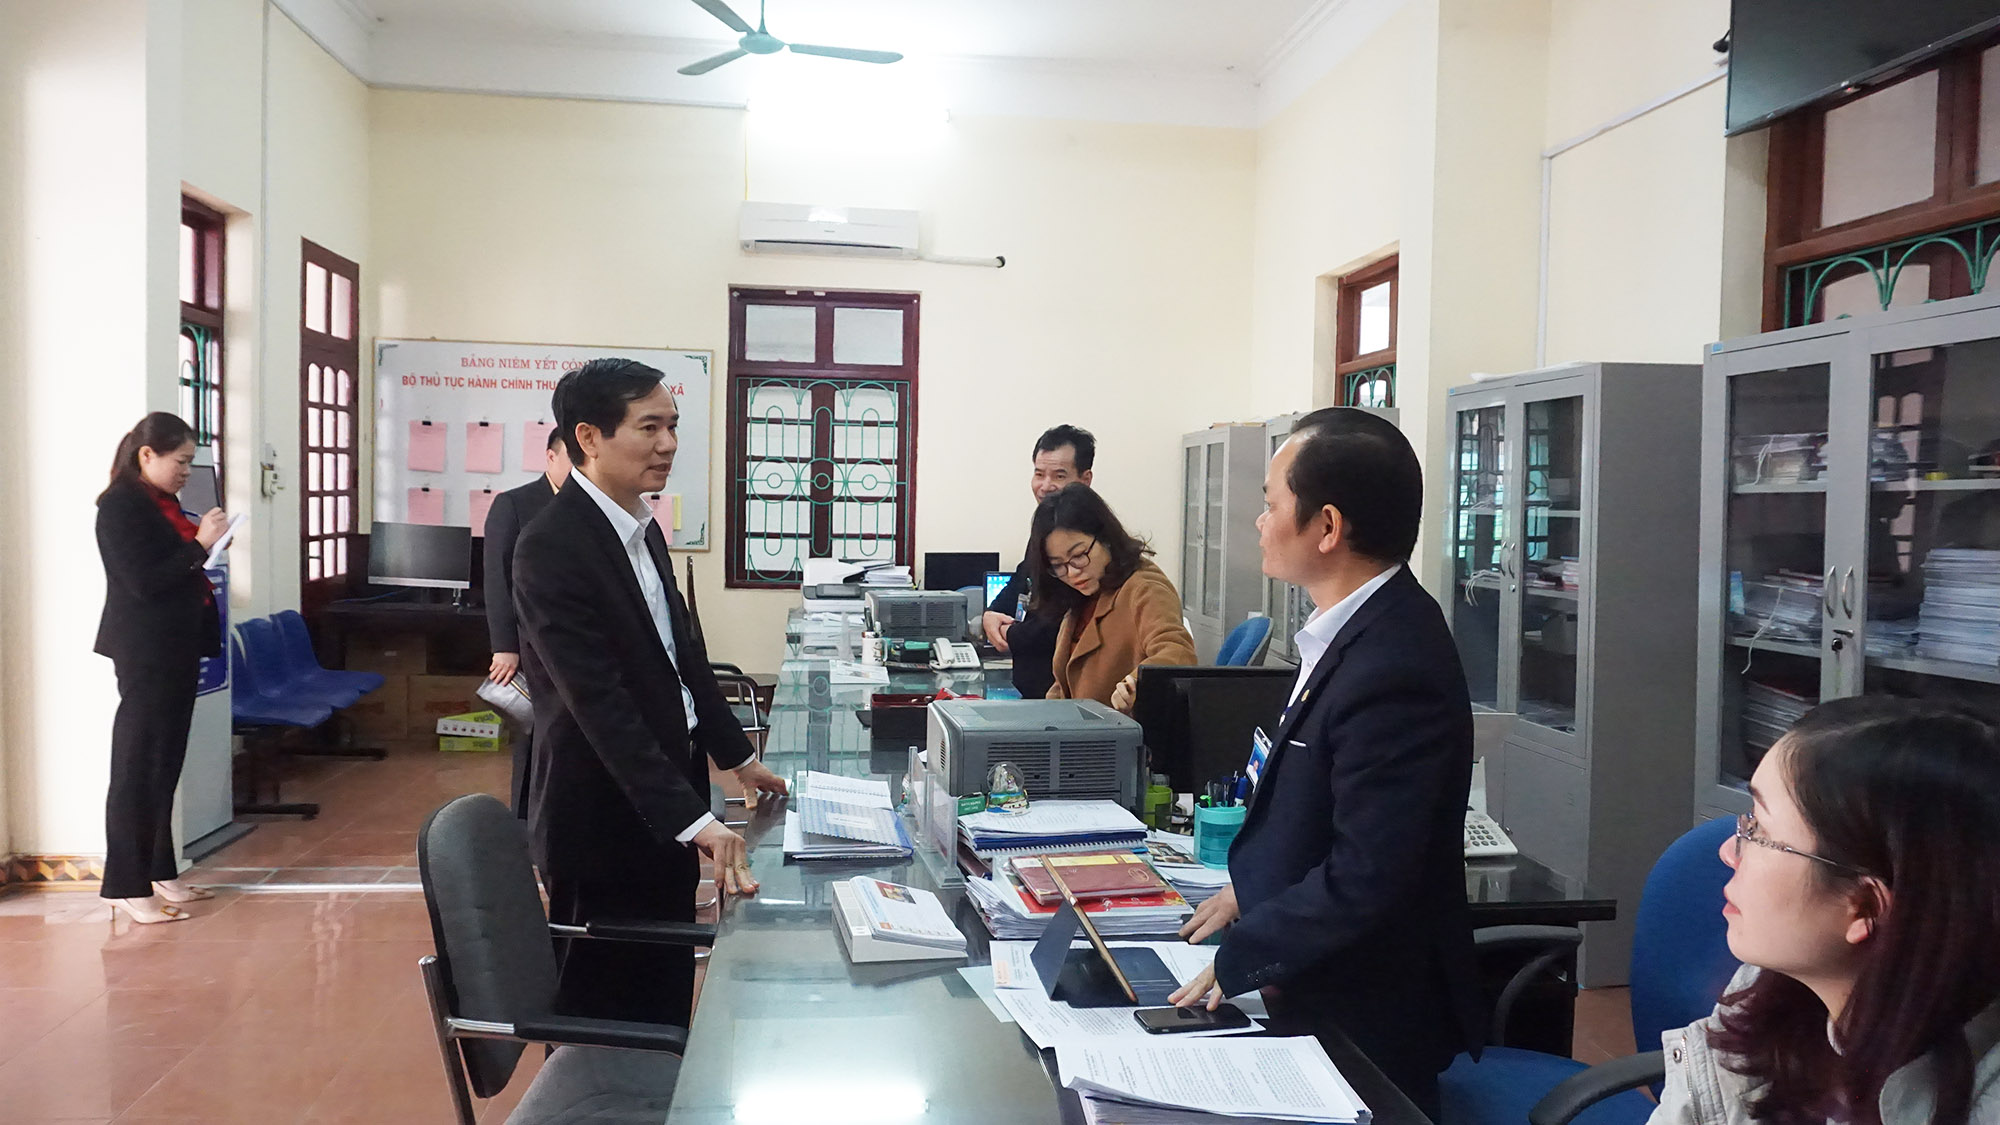 Đoàn công tác Sở Nội vụ kiểm tra đột xuất việc thực hiện kỷ luật, kỷ cương hành chính tại  Bộ phận tiếp nhận và trả kết quả hiện đại tại phường Thượng Yên Công (TP Uông Bí).